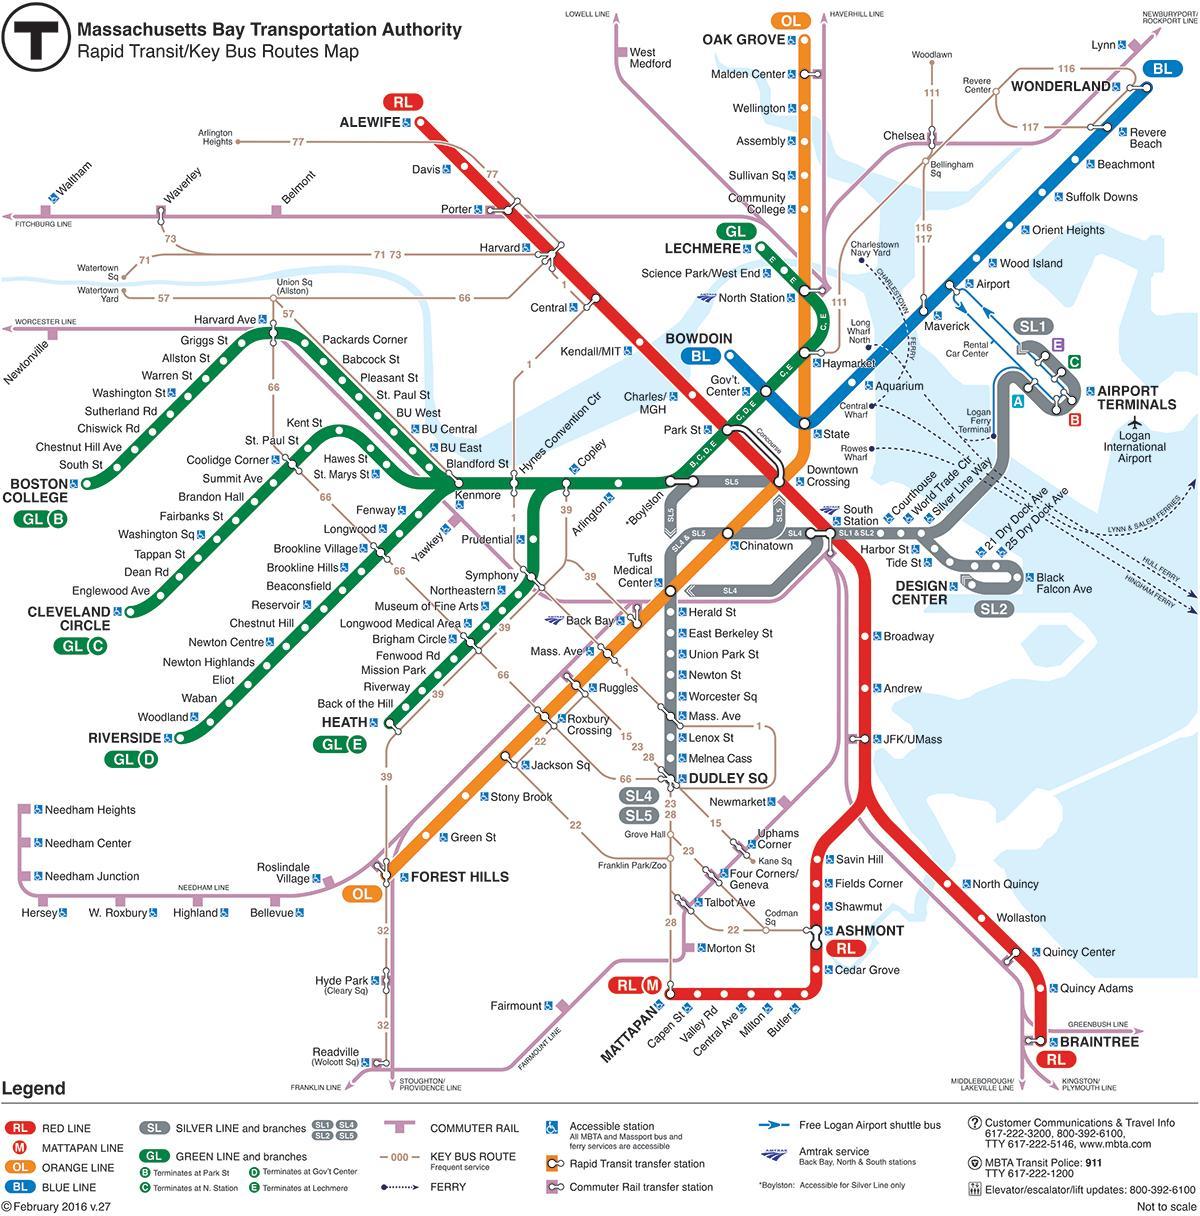 MBTA mapa da linha vermelha